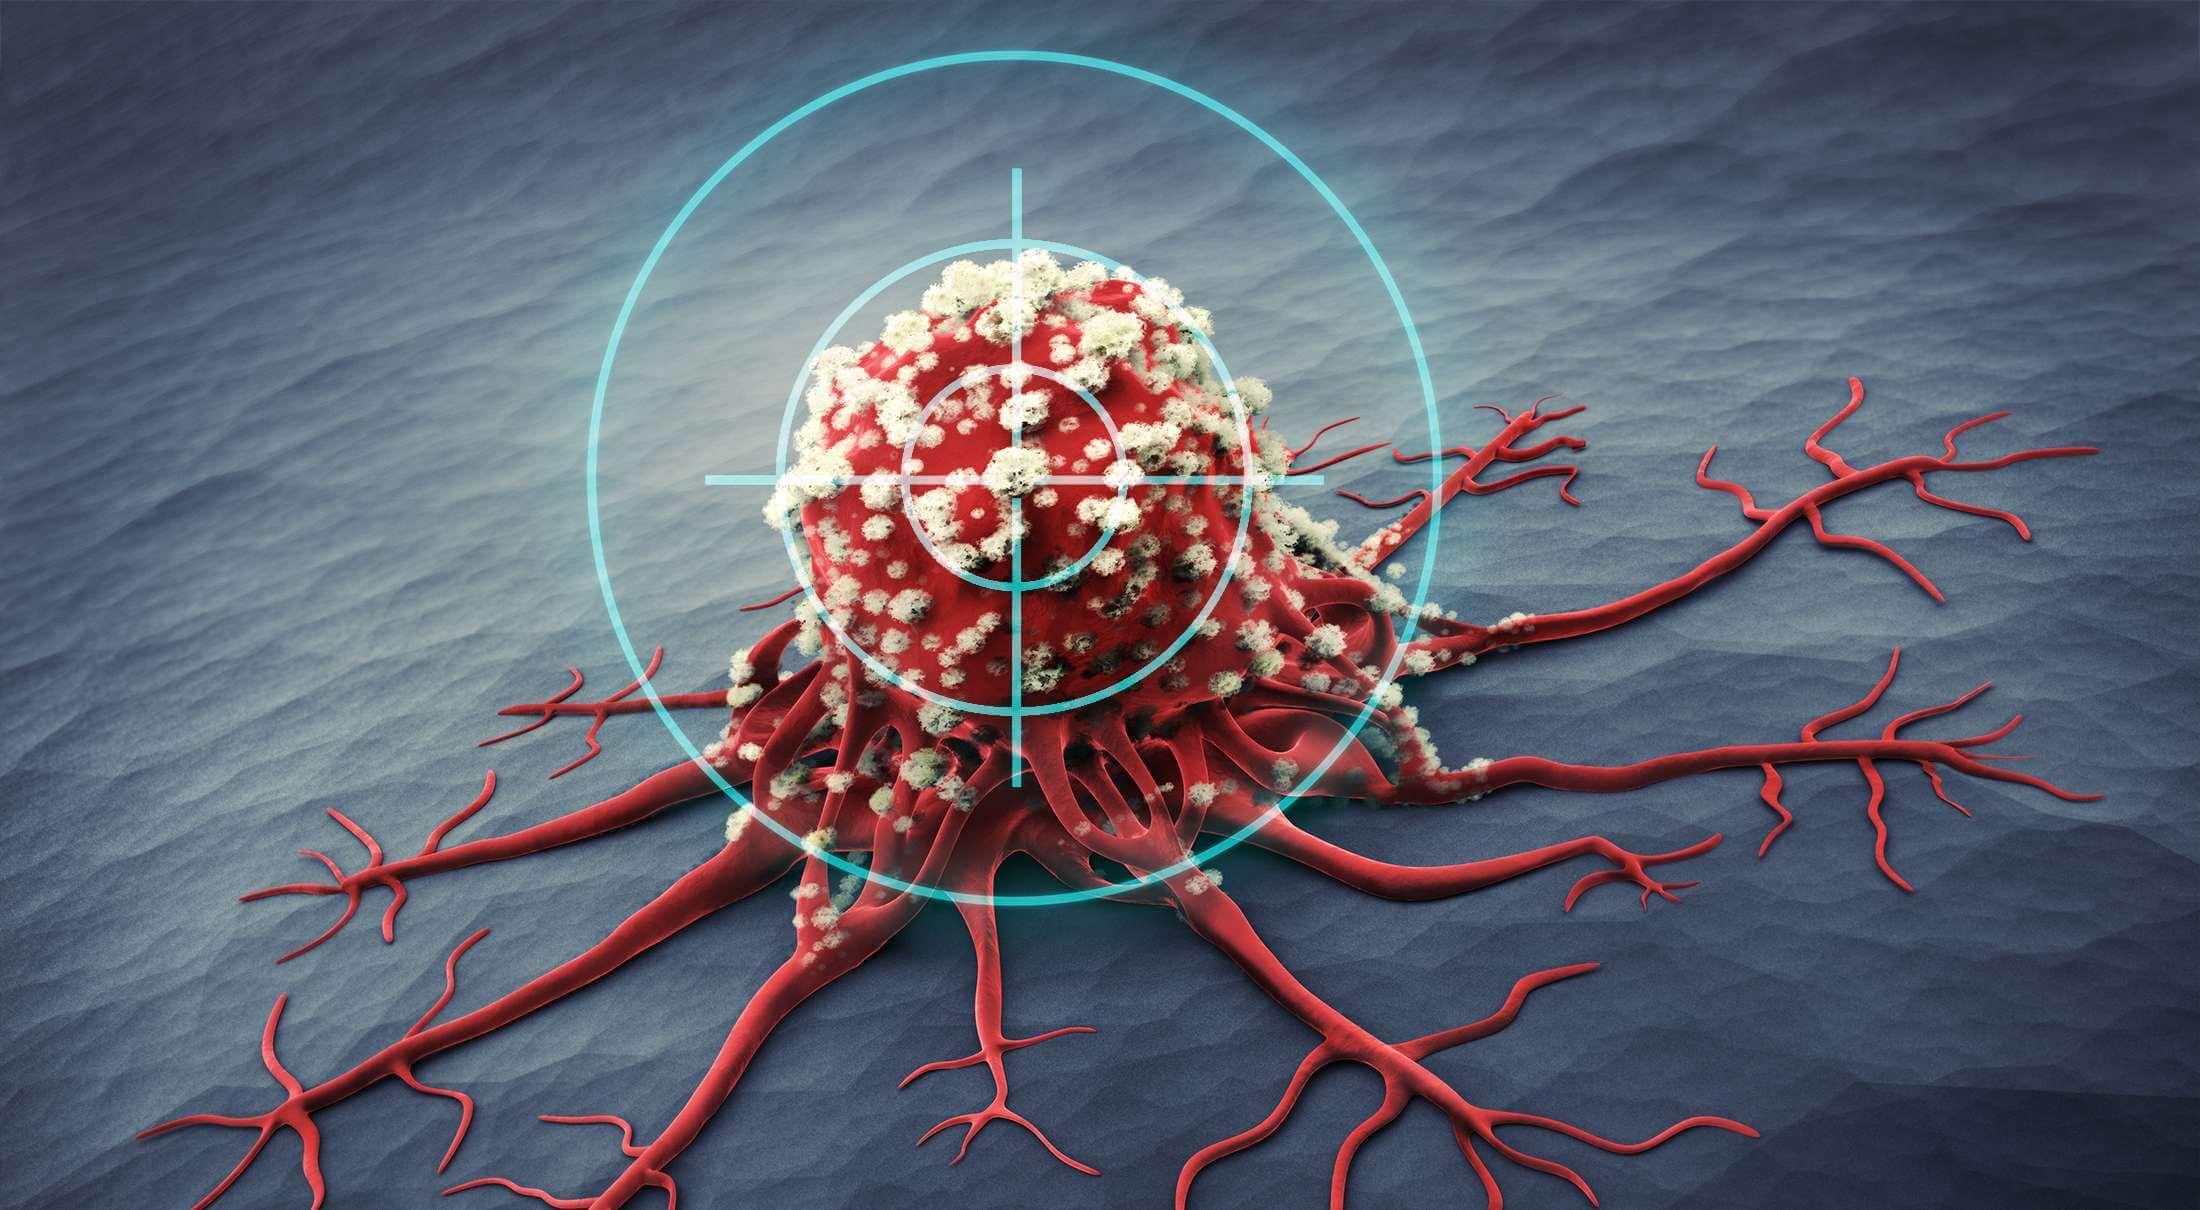 3D-Rendering einer Krebszelle - medizinische Illustration